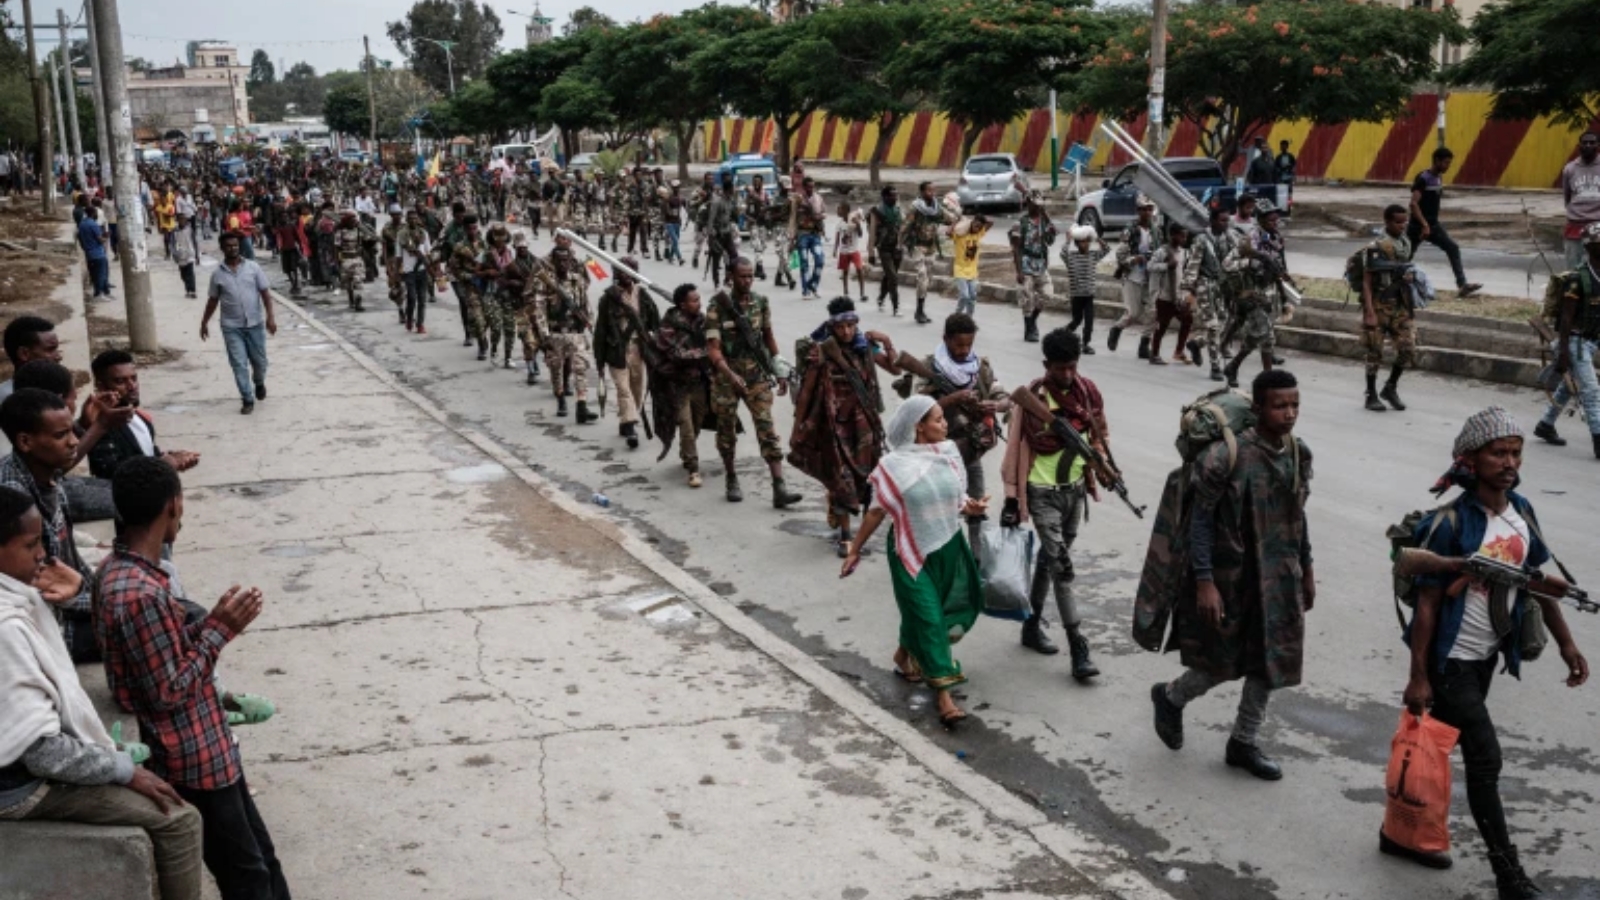 حوالى 150 ألف لاجئ إريتري هاربين من الفقر والحكومة الاستبدادية استضافتهم إثيوبيا، قبل صراع تيغراي بين متمردي جبهة التحرير الشعبية لتحرير تيغراي، والقوات الحكومية والحلفاء الإريتريين. 